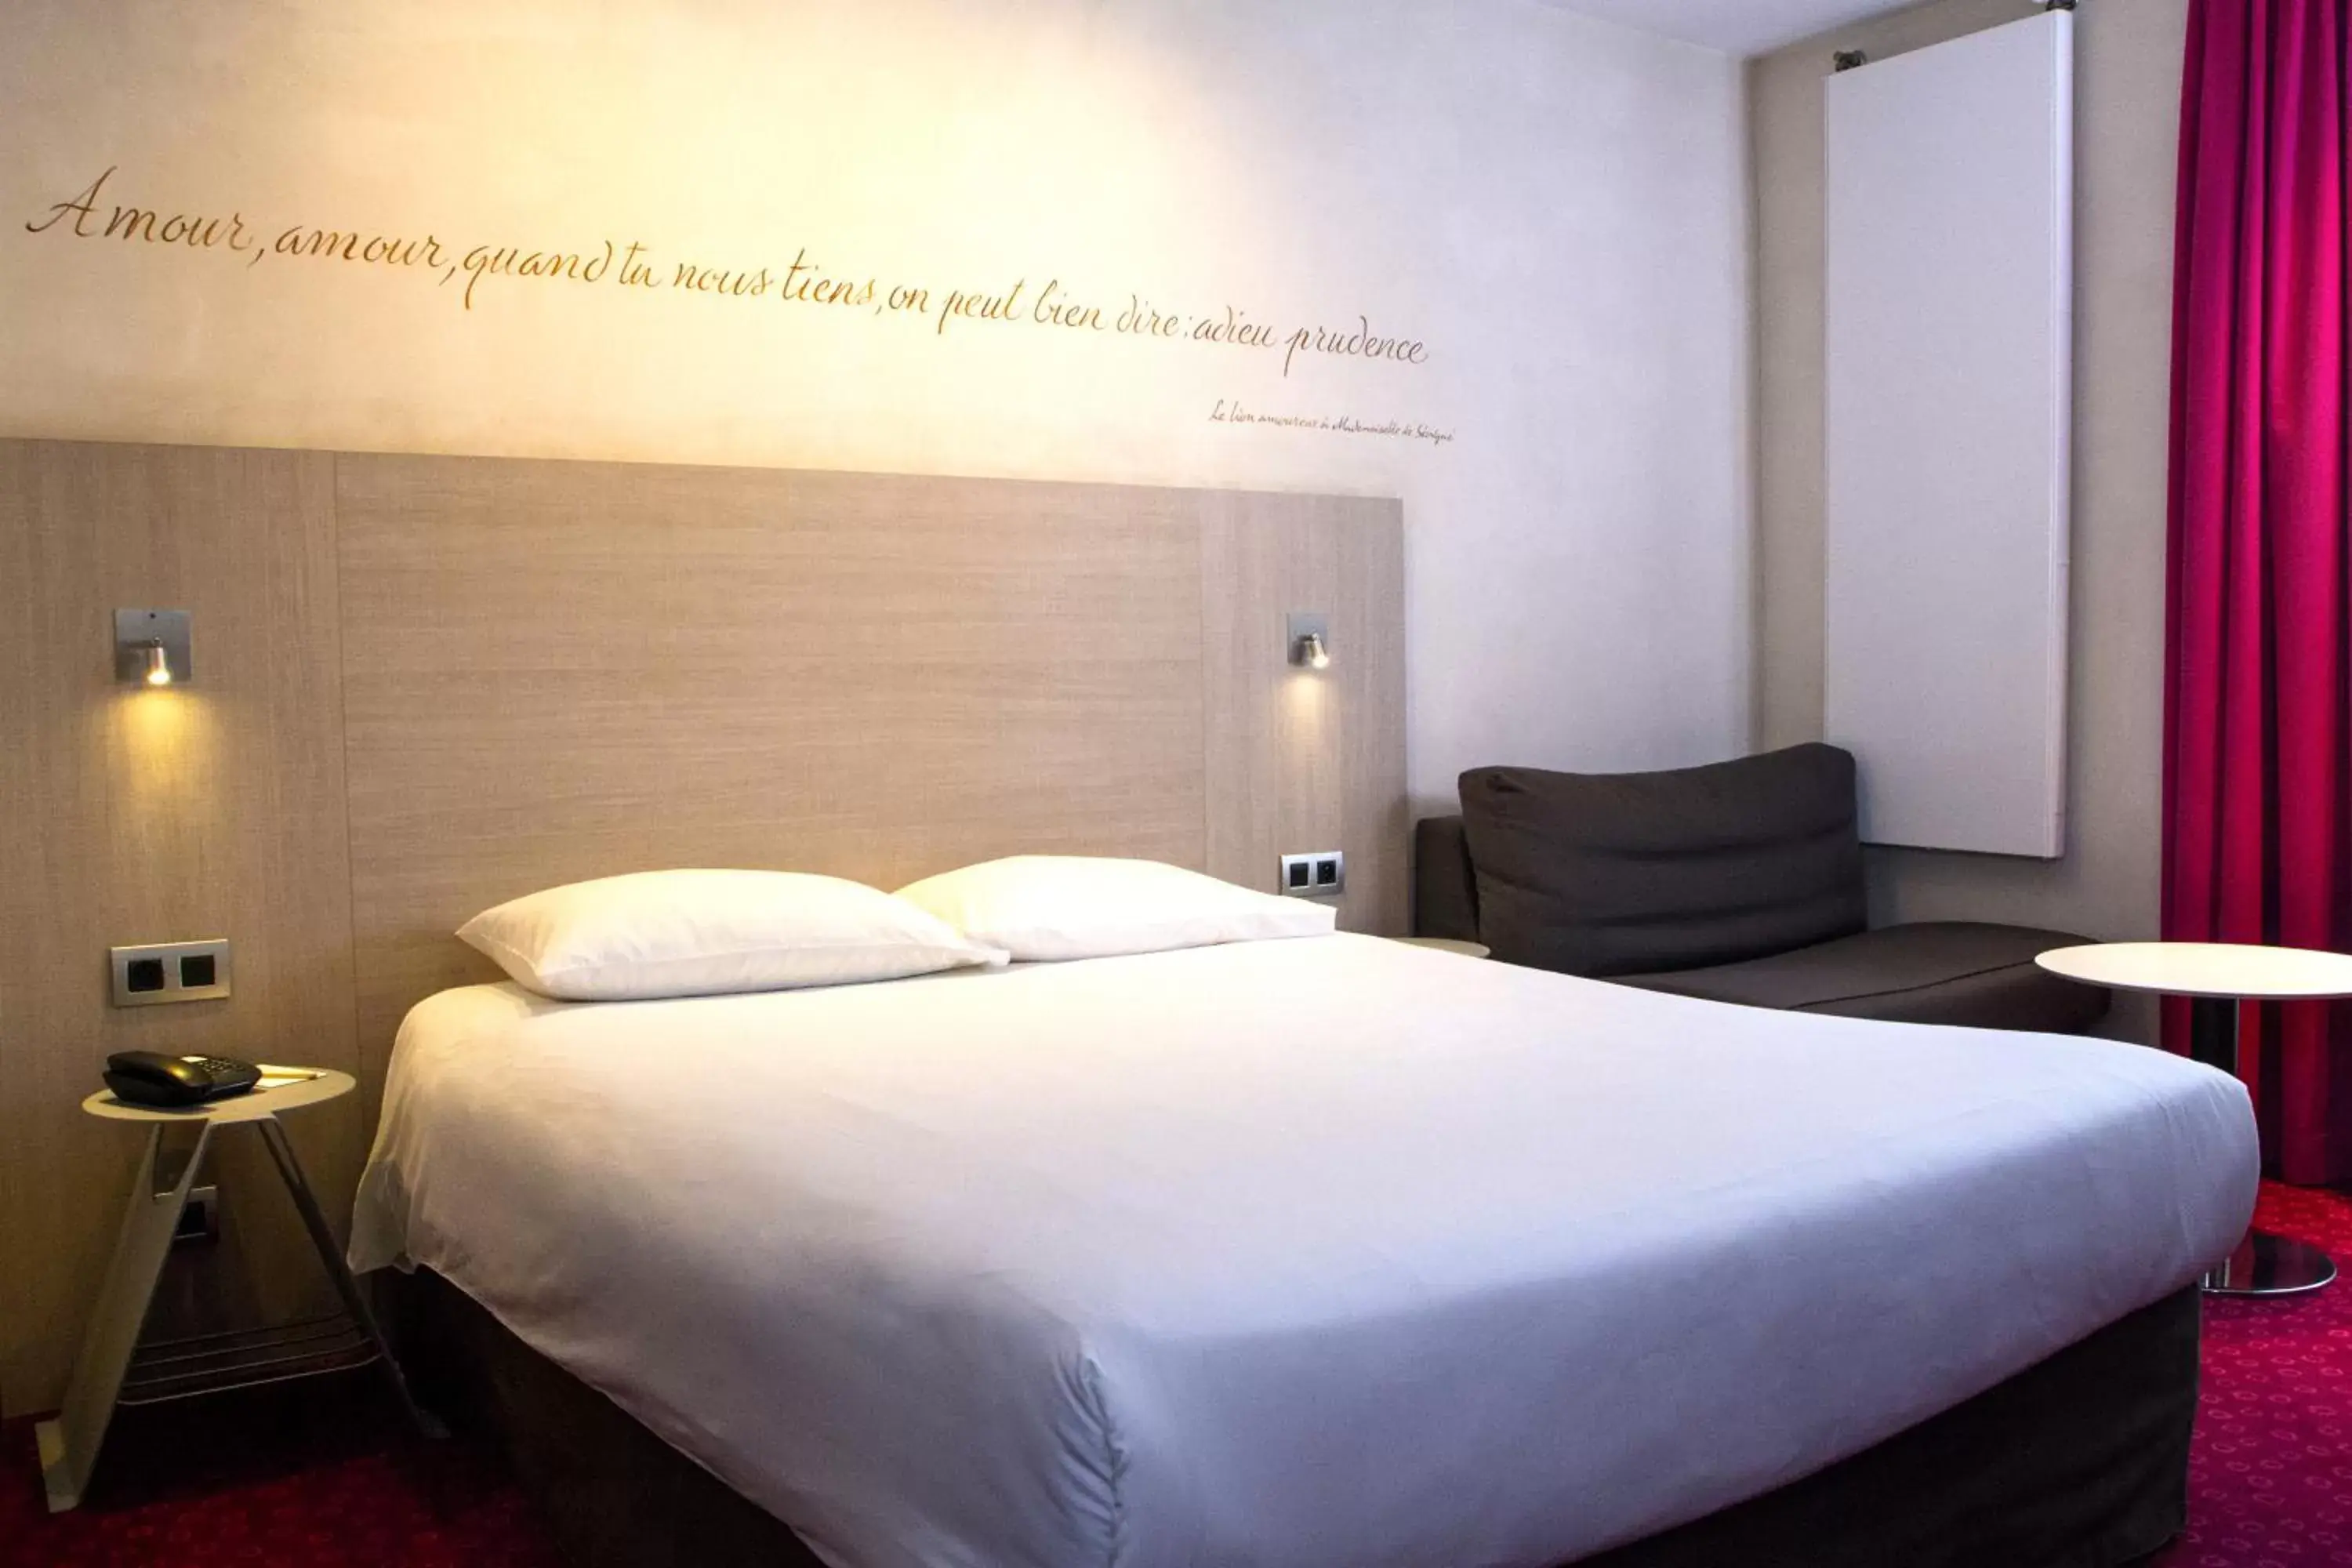 Bedroom, Bed in Hôtel de Sévigné